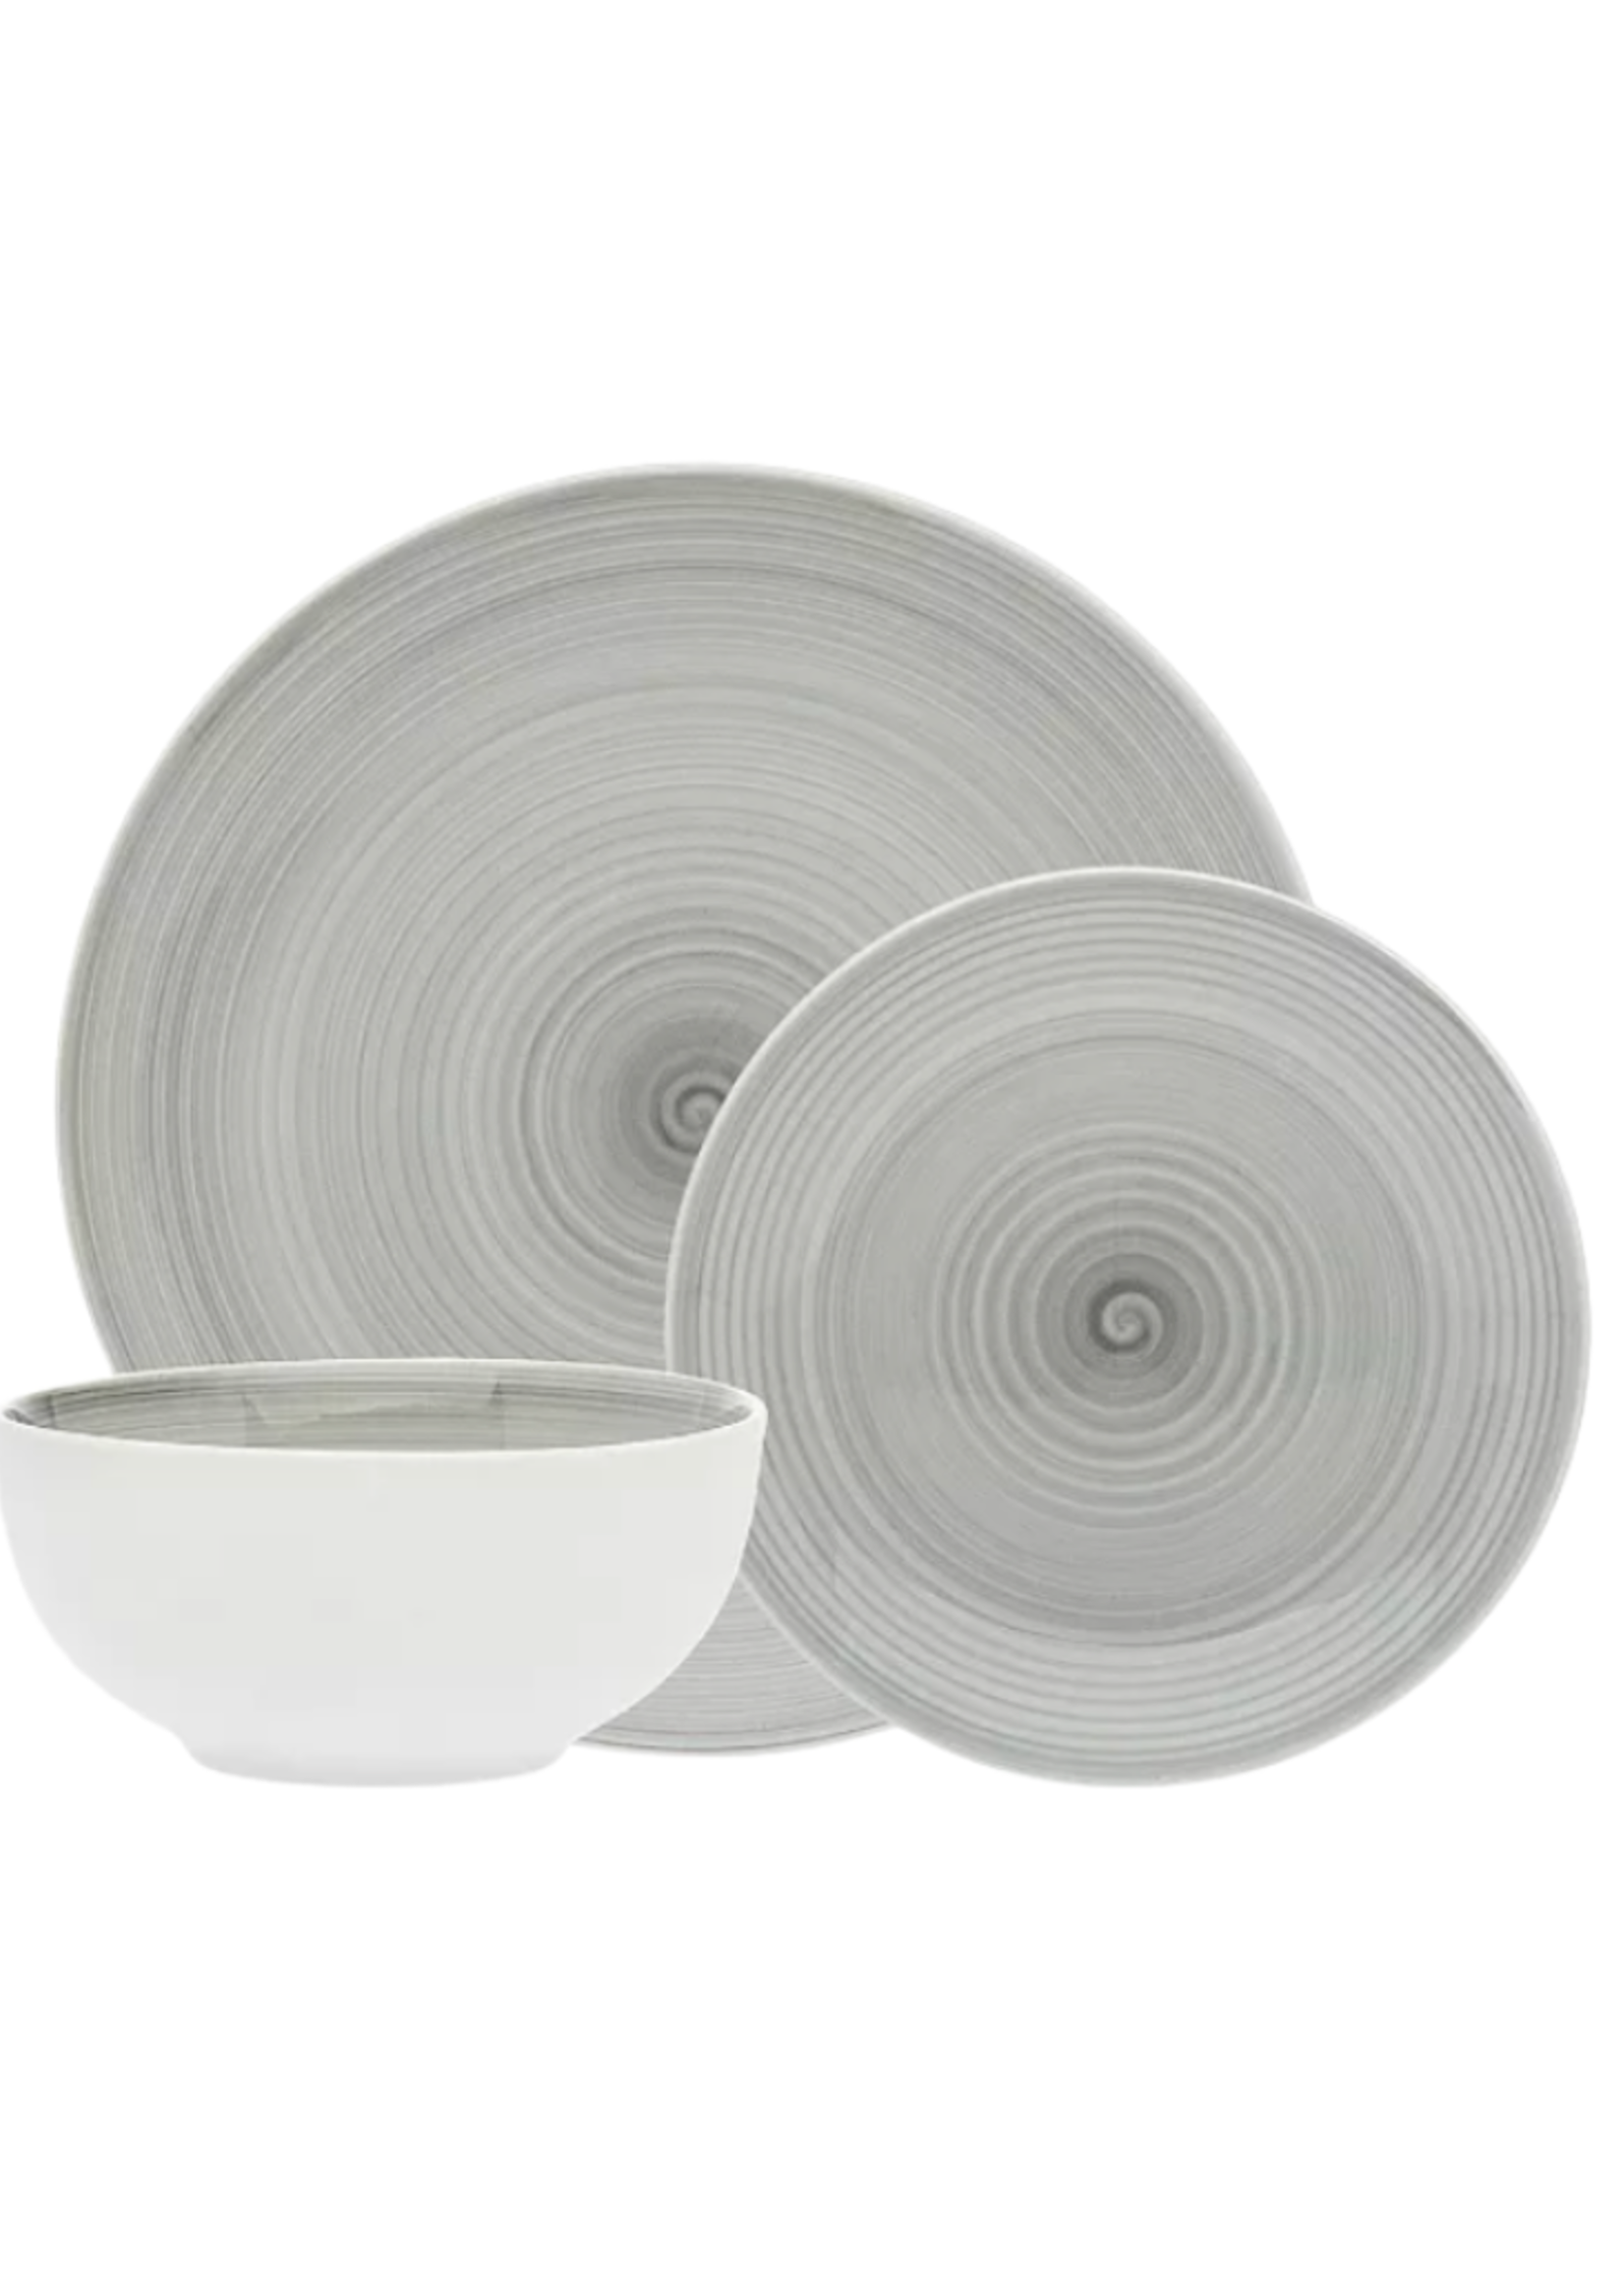 Spiral Grey Dinnerware -12 pc Set